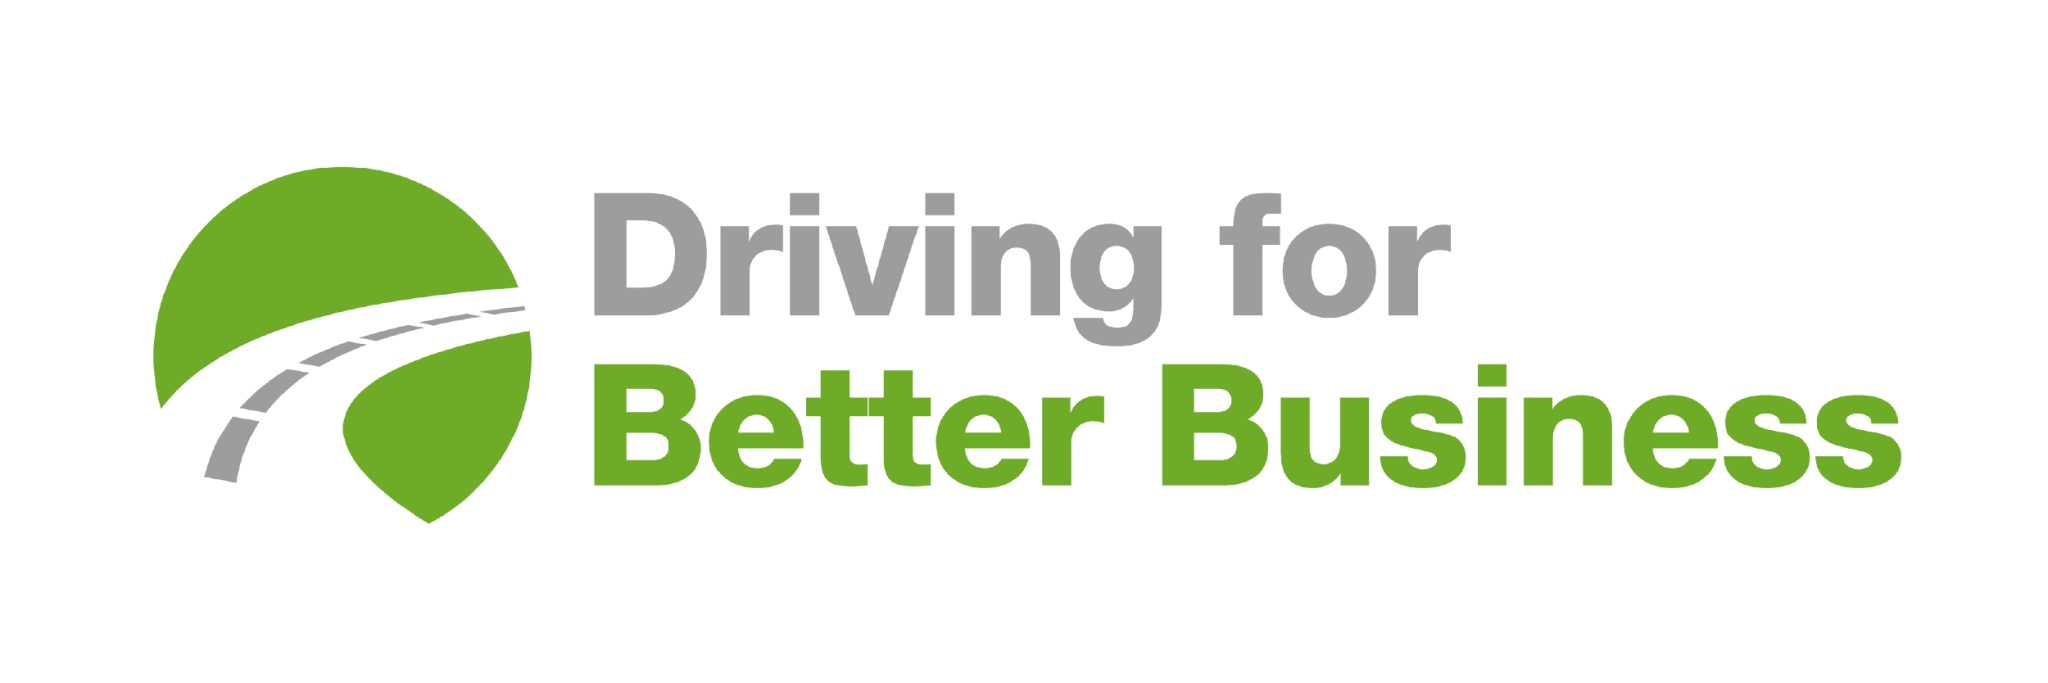 Driving for Better Business Logo